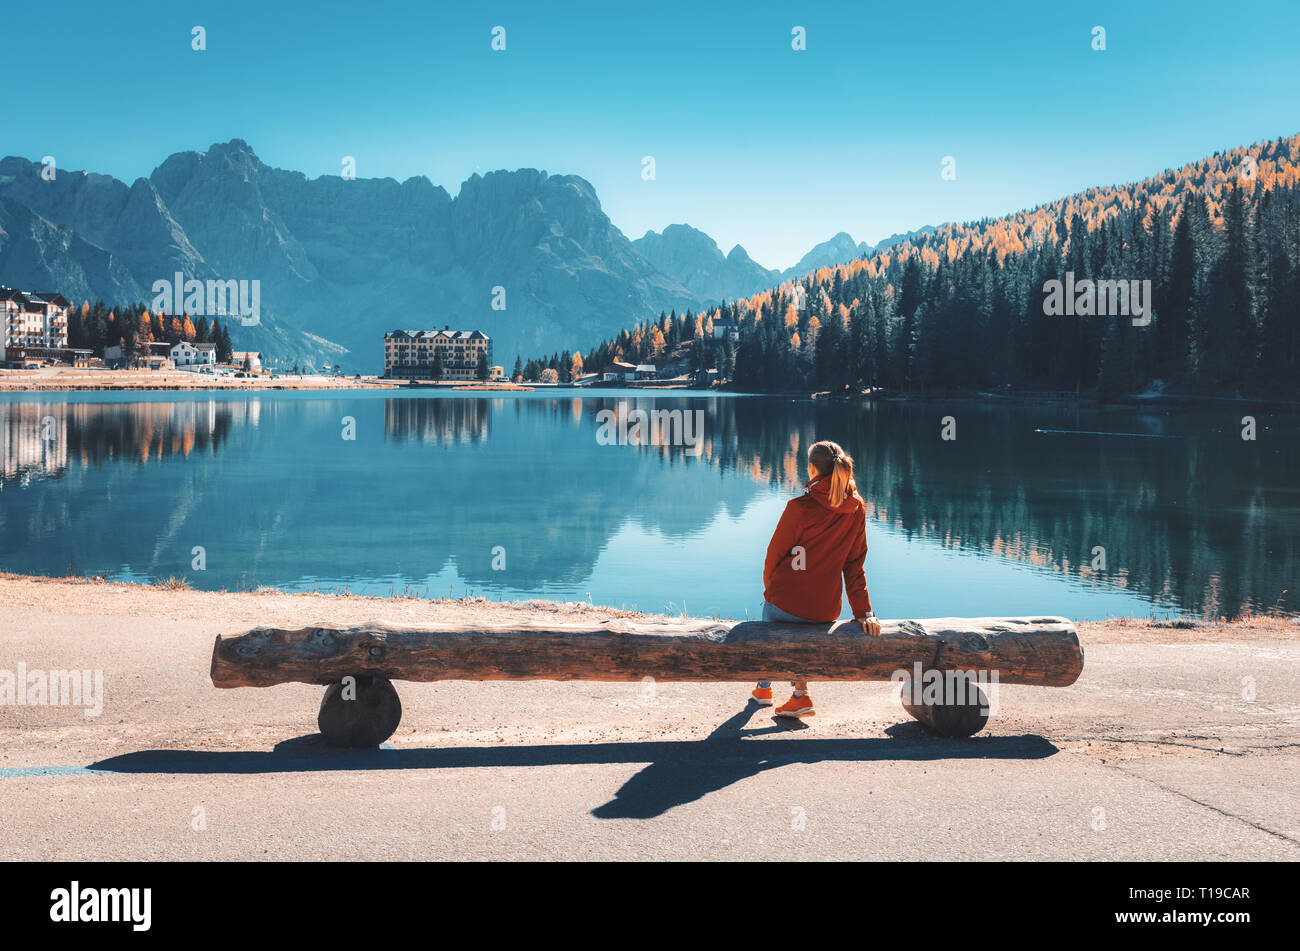 Giovane donna seduta sul banco di legno sulla costa del lago di Misurina al tramonto in autunno. Dolomiti, Italia. Paesaggio con ragazza in giacca rossa, reflec Foto Stock